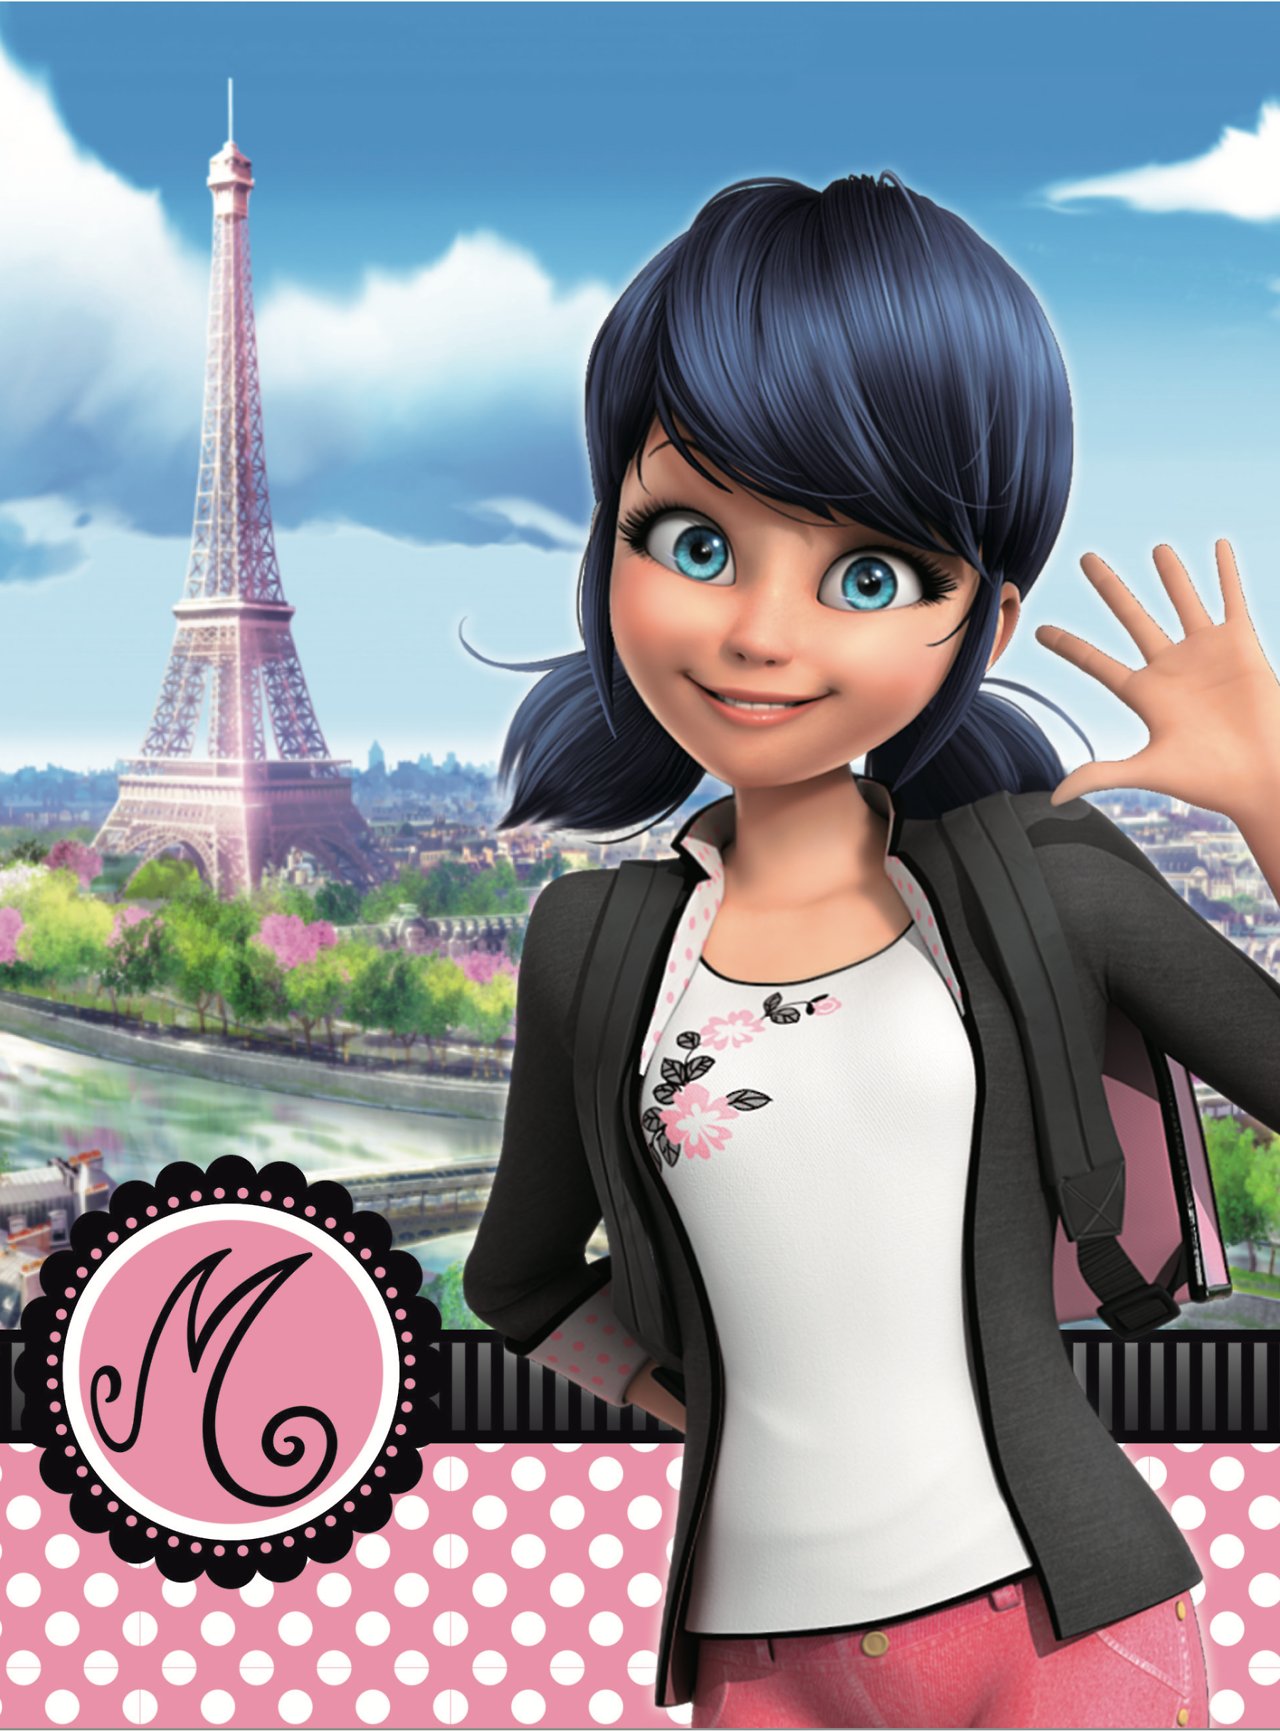 Einmädchen Mit Einem Rosa Gepunkteten Kleid Und Dem Eiffelturm